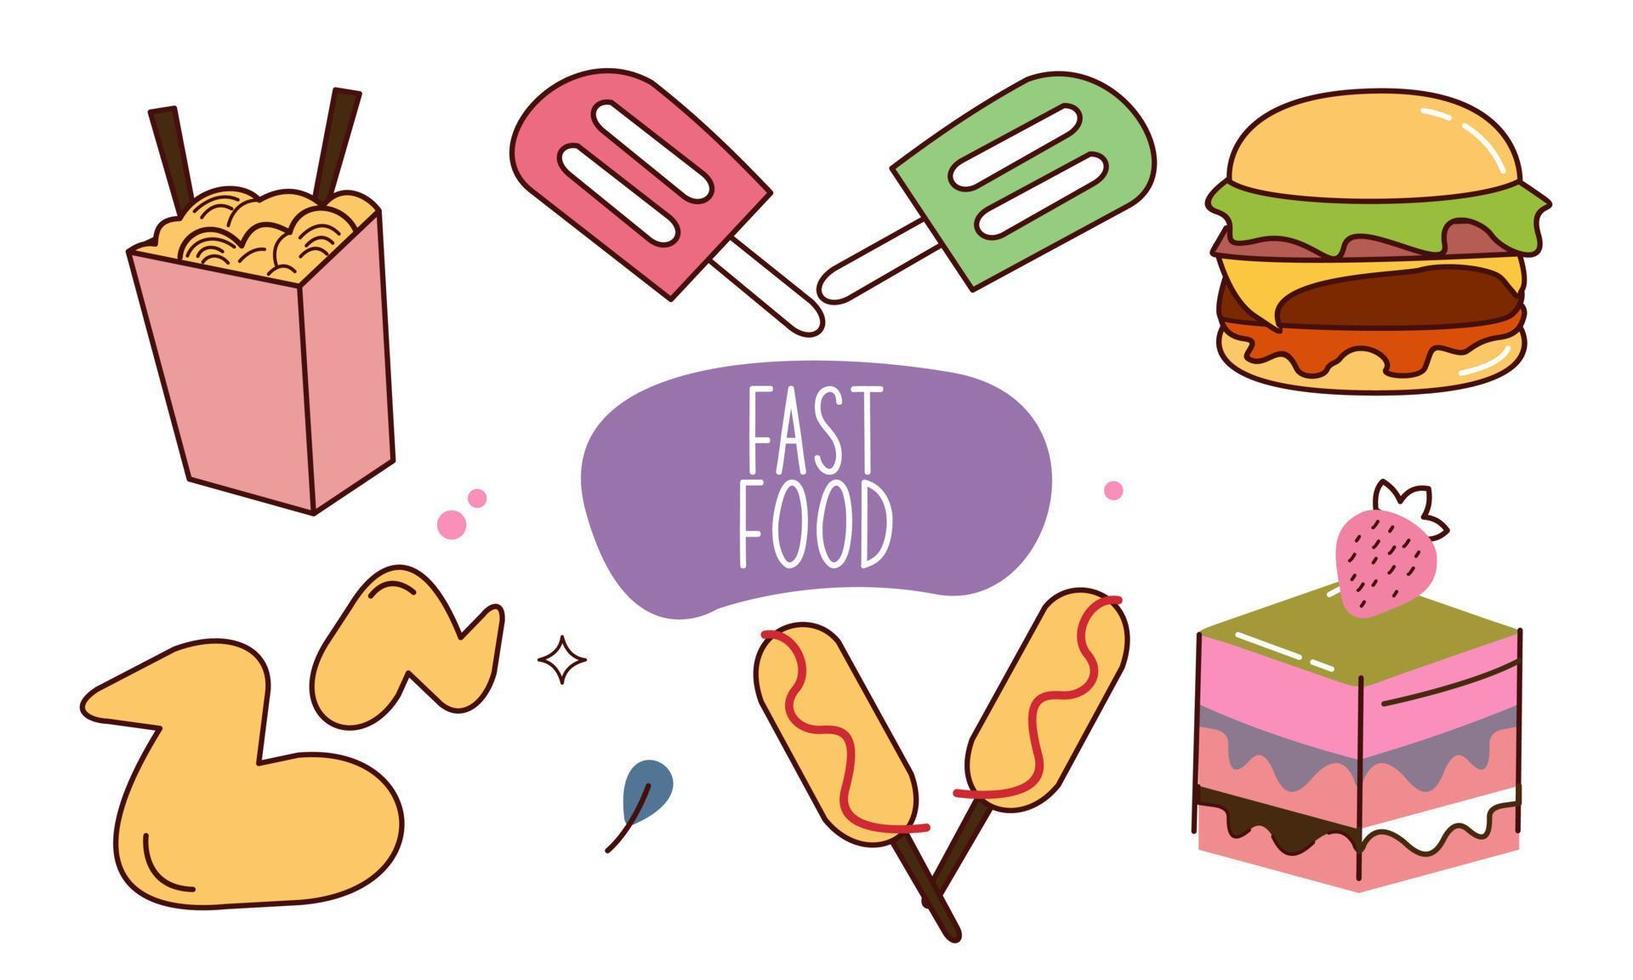 comida rápida doodle elementos de objeto de estilo de arte de línea dibujado a mano vector